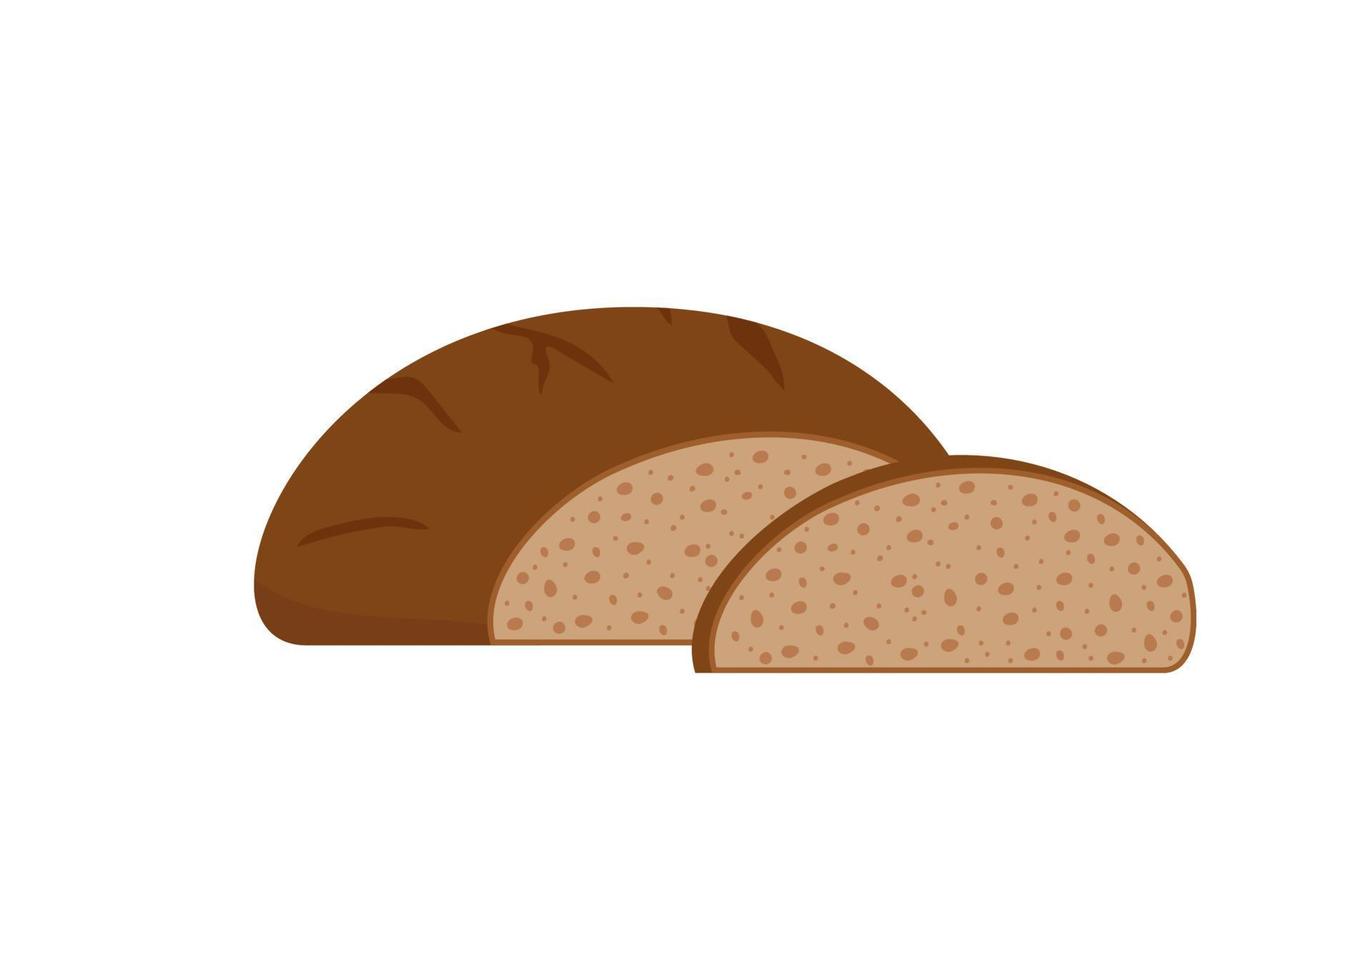 gebakje brood van rogge, bruin bakkerij voedsel, broodje. cirkel brood met besnoeiing plak. vector illustratie